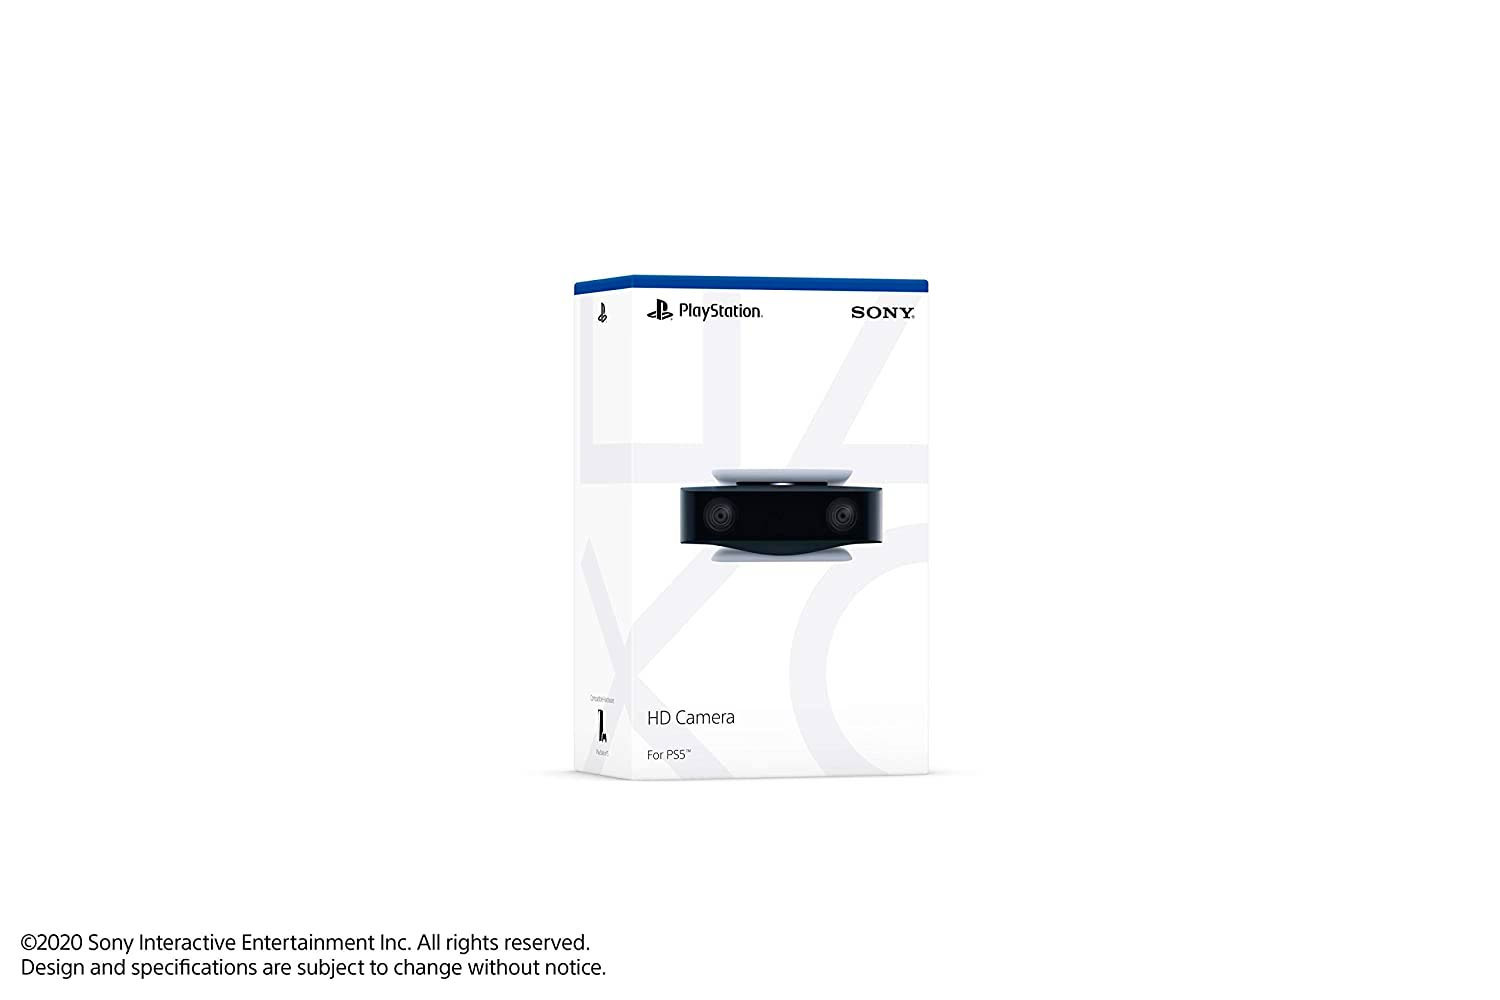 Camara PS5 Sony Full Hd 1080p - SONY CONSOLAS - Megatone